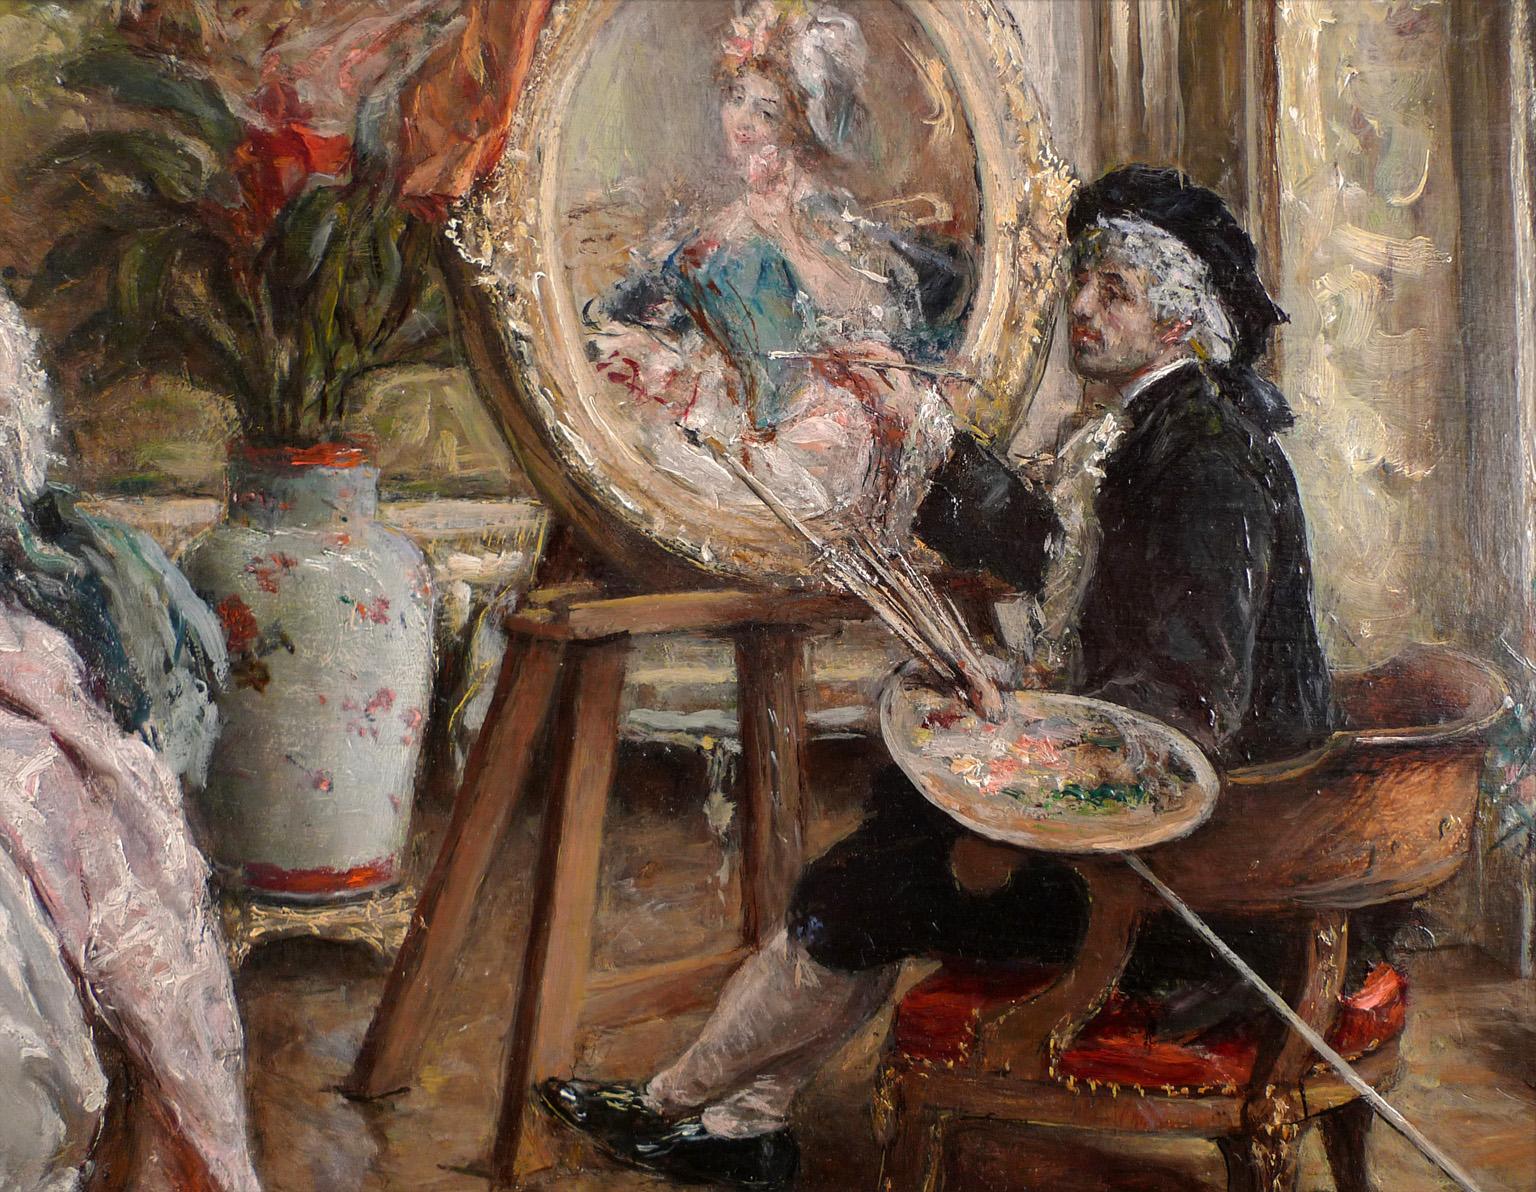 « Le peintre et son modèle », huile sur panneau de bois d'acajou du 19e siècle par E. L. Garrido - Réalisme Painting par Eduardo Leon Garrido